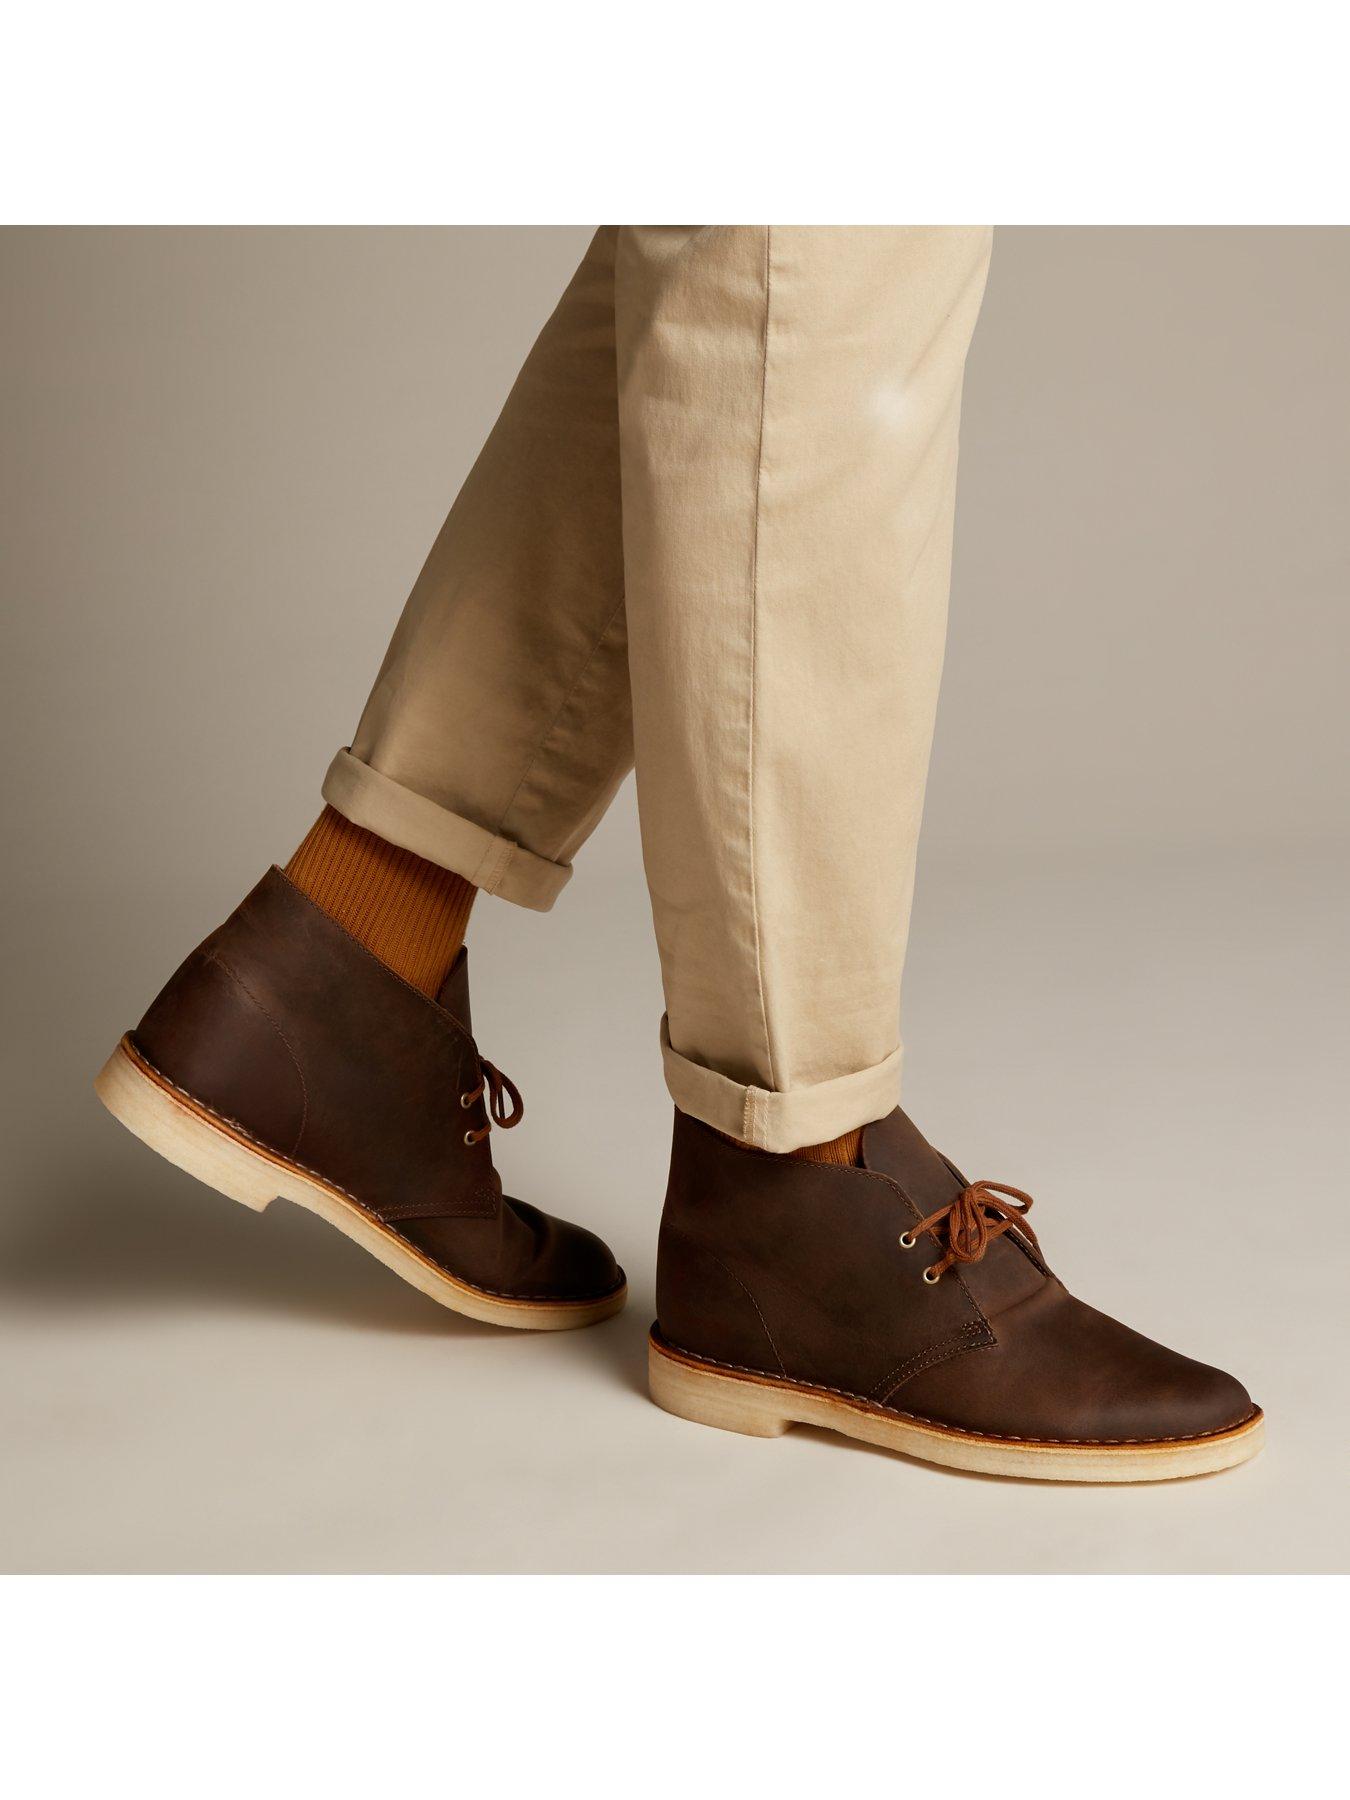 clarks men's originals desert boot leather boots in beeswax